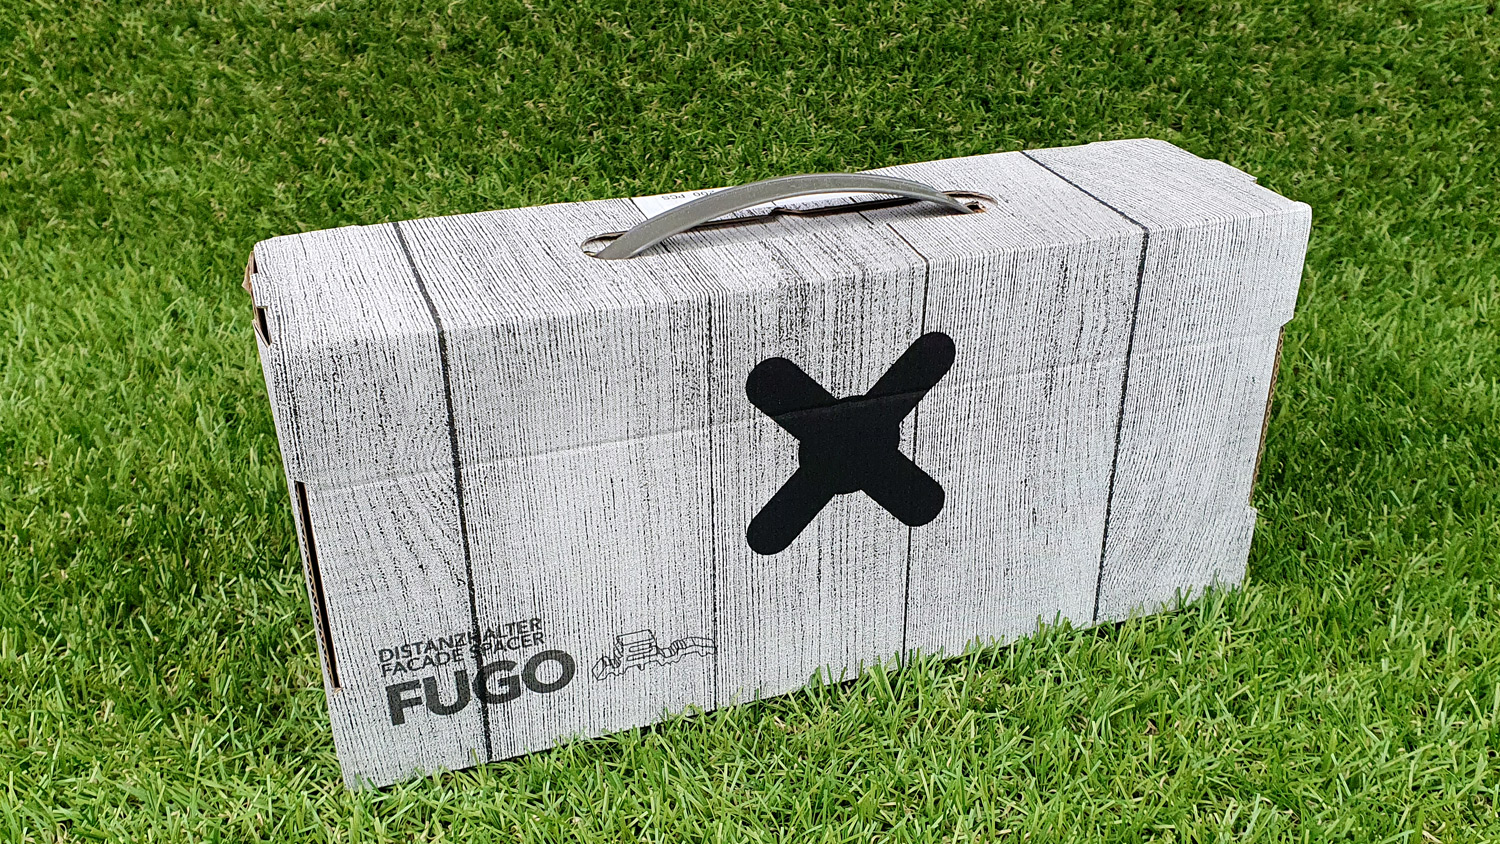 Fugo Distanzhalter 12mm für Rhombusleisten, 200 Stck, für sichtbare Montage